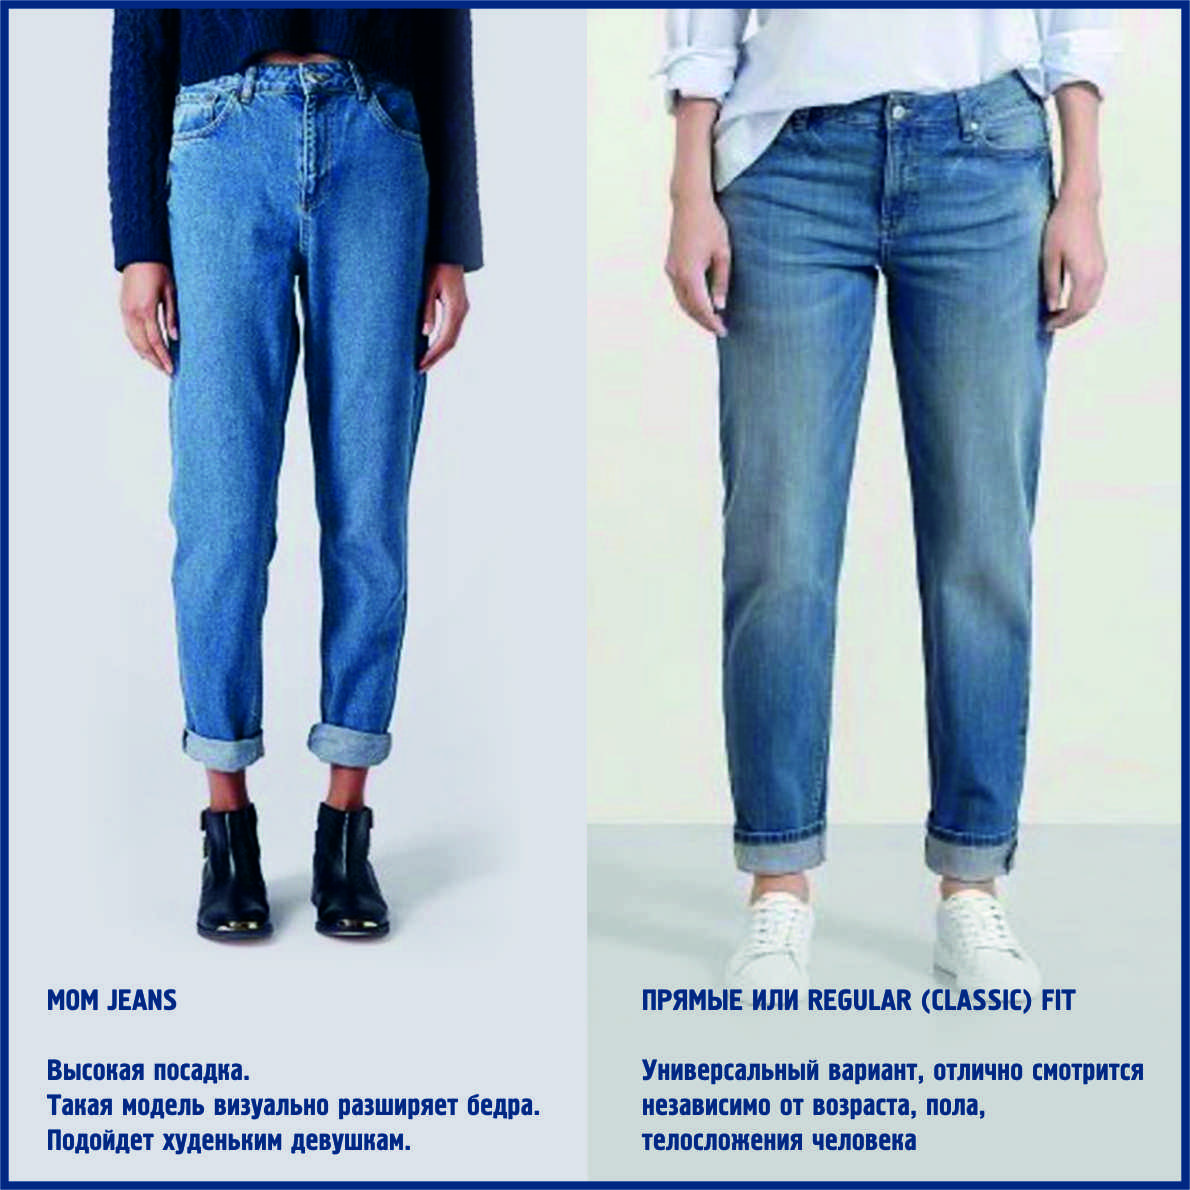 Как и с чем носить джинсы зимой: модные советы стилистов.
как носить джинсы зимой — modnayadama